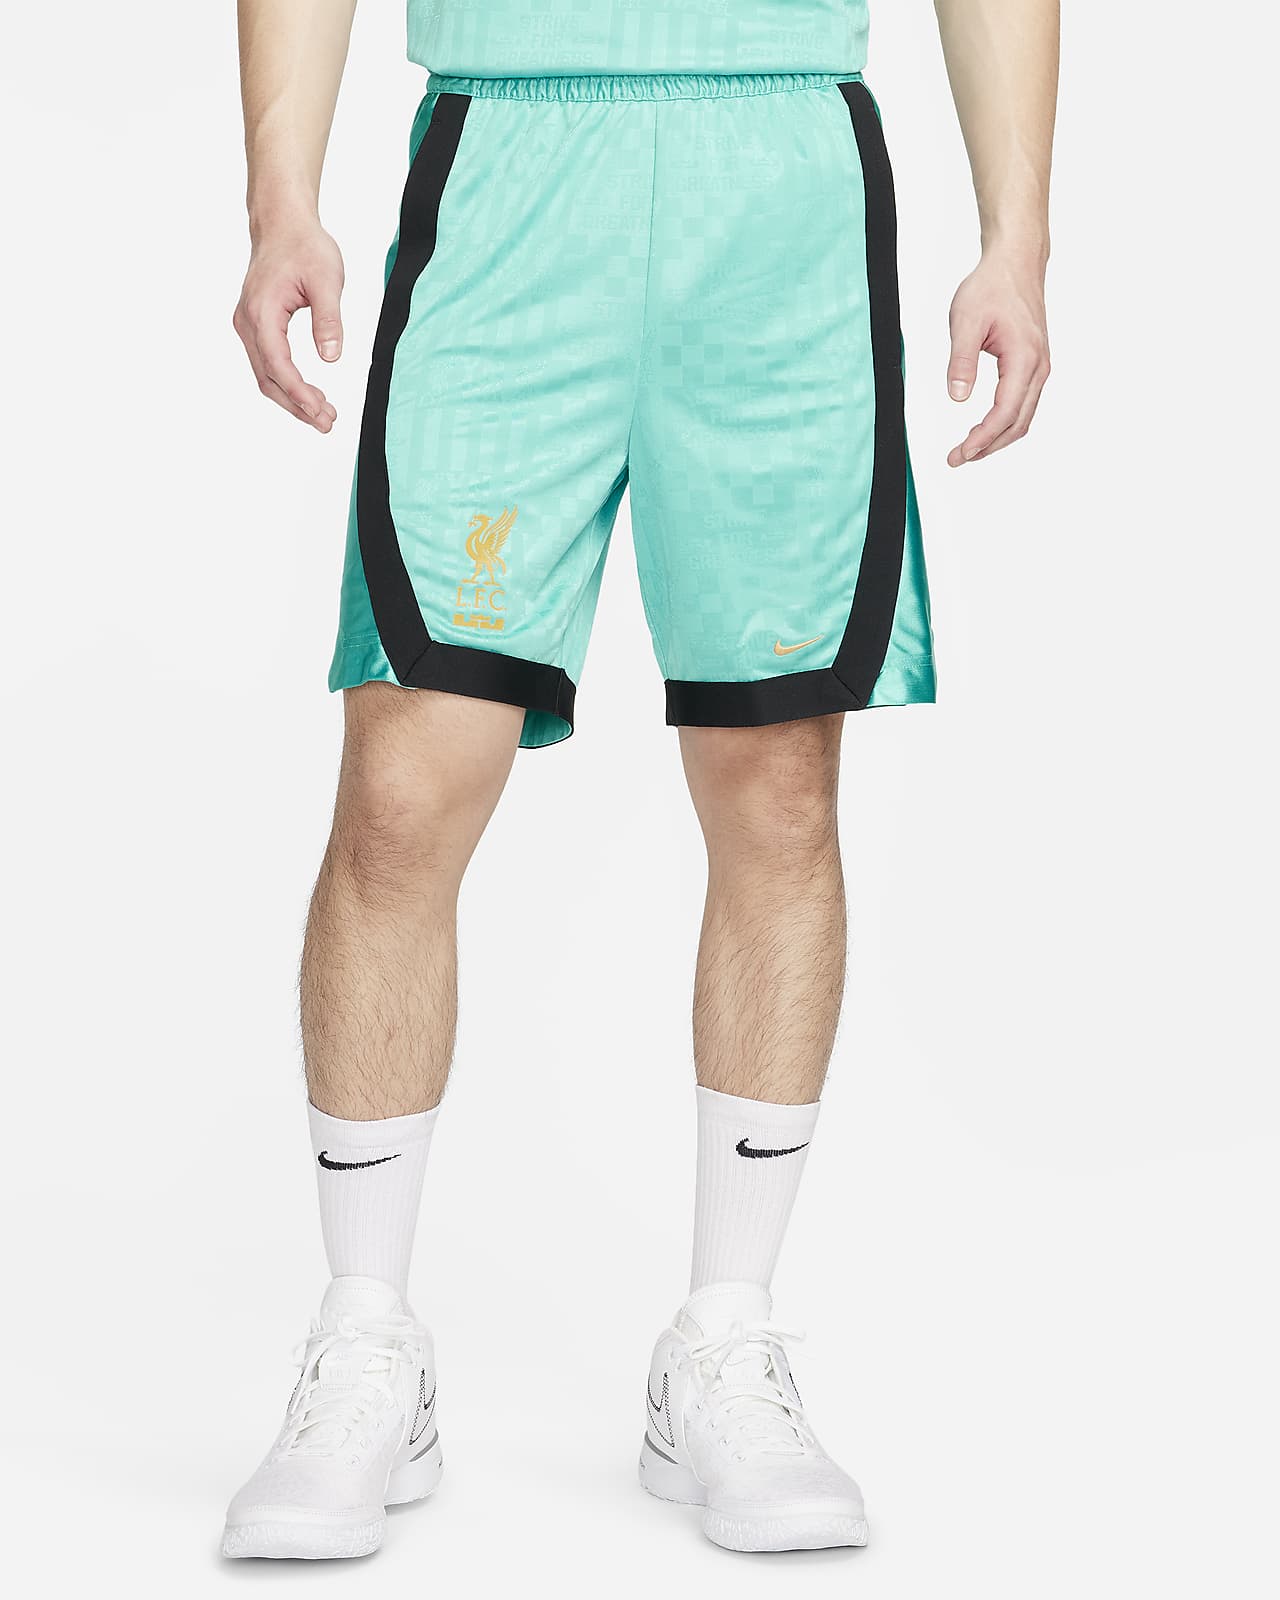 レブロン x リバプール FC メンズ Dri-FIT DNA 21cm バスケットボールショートパンツ